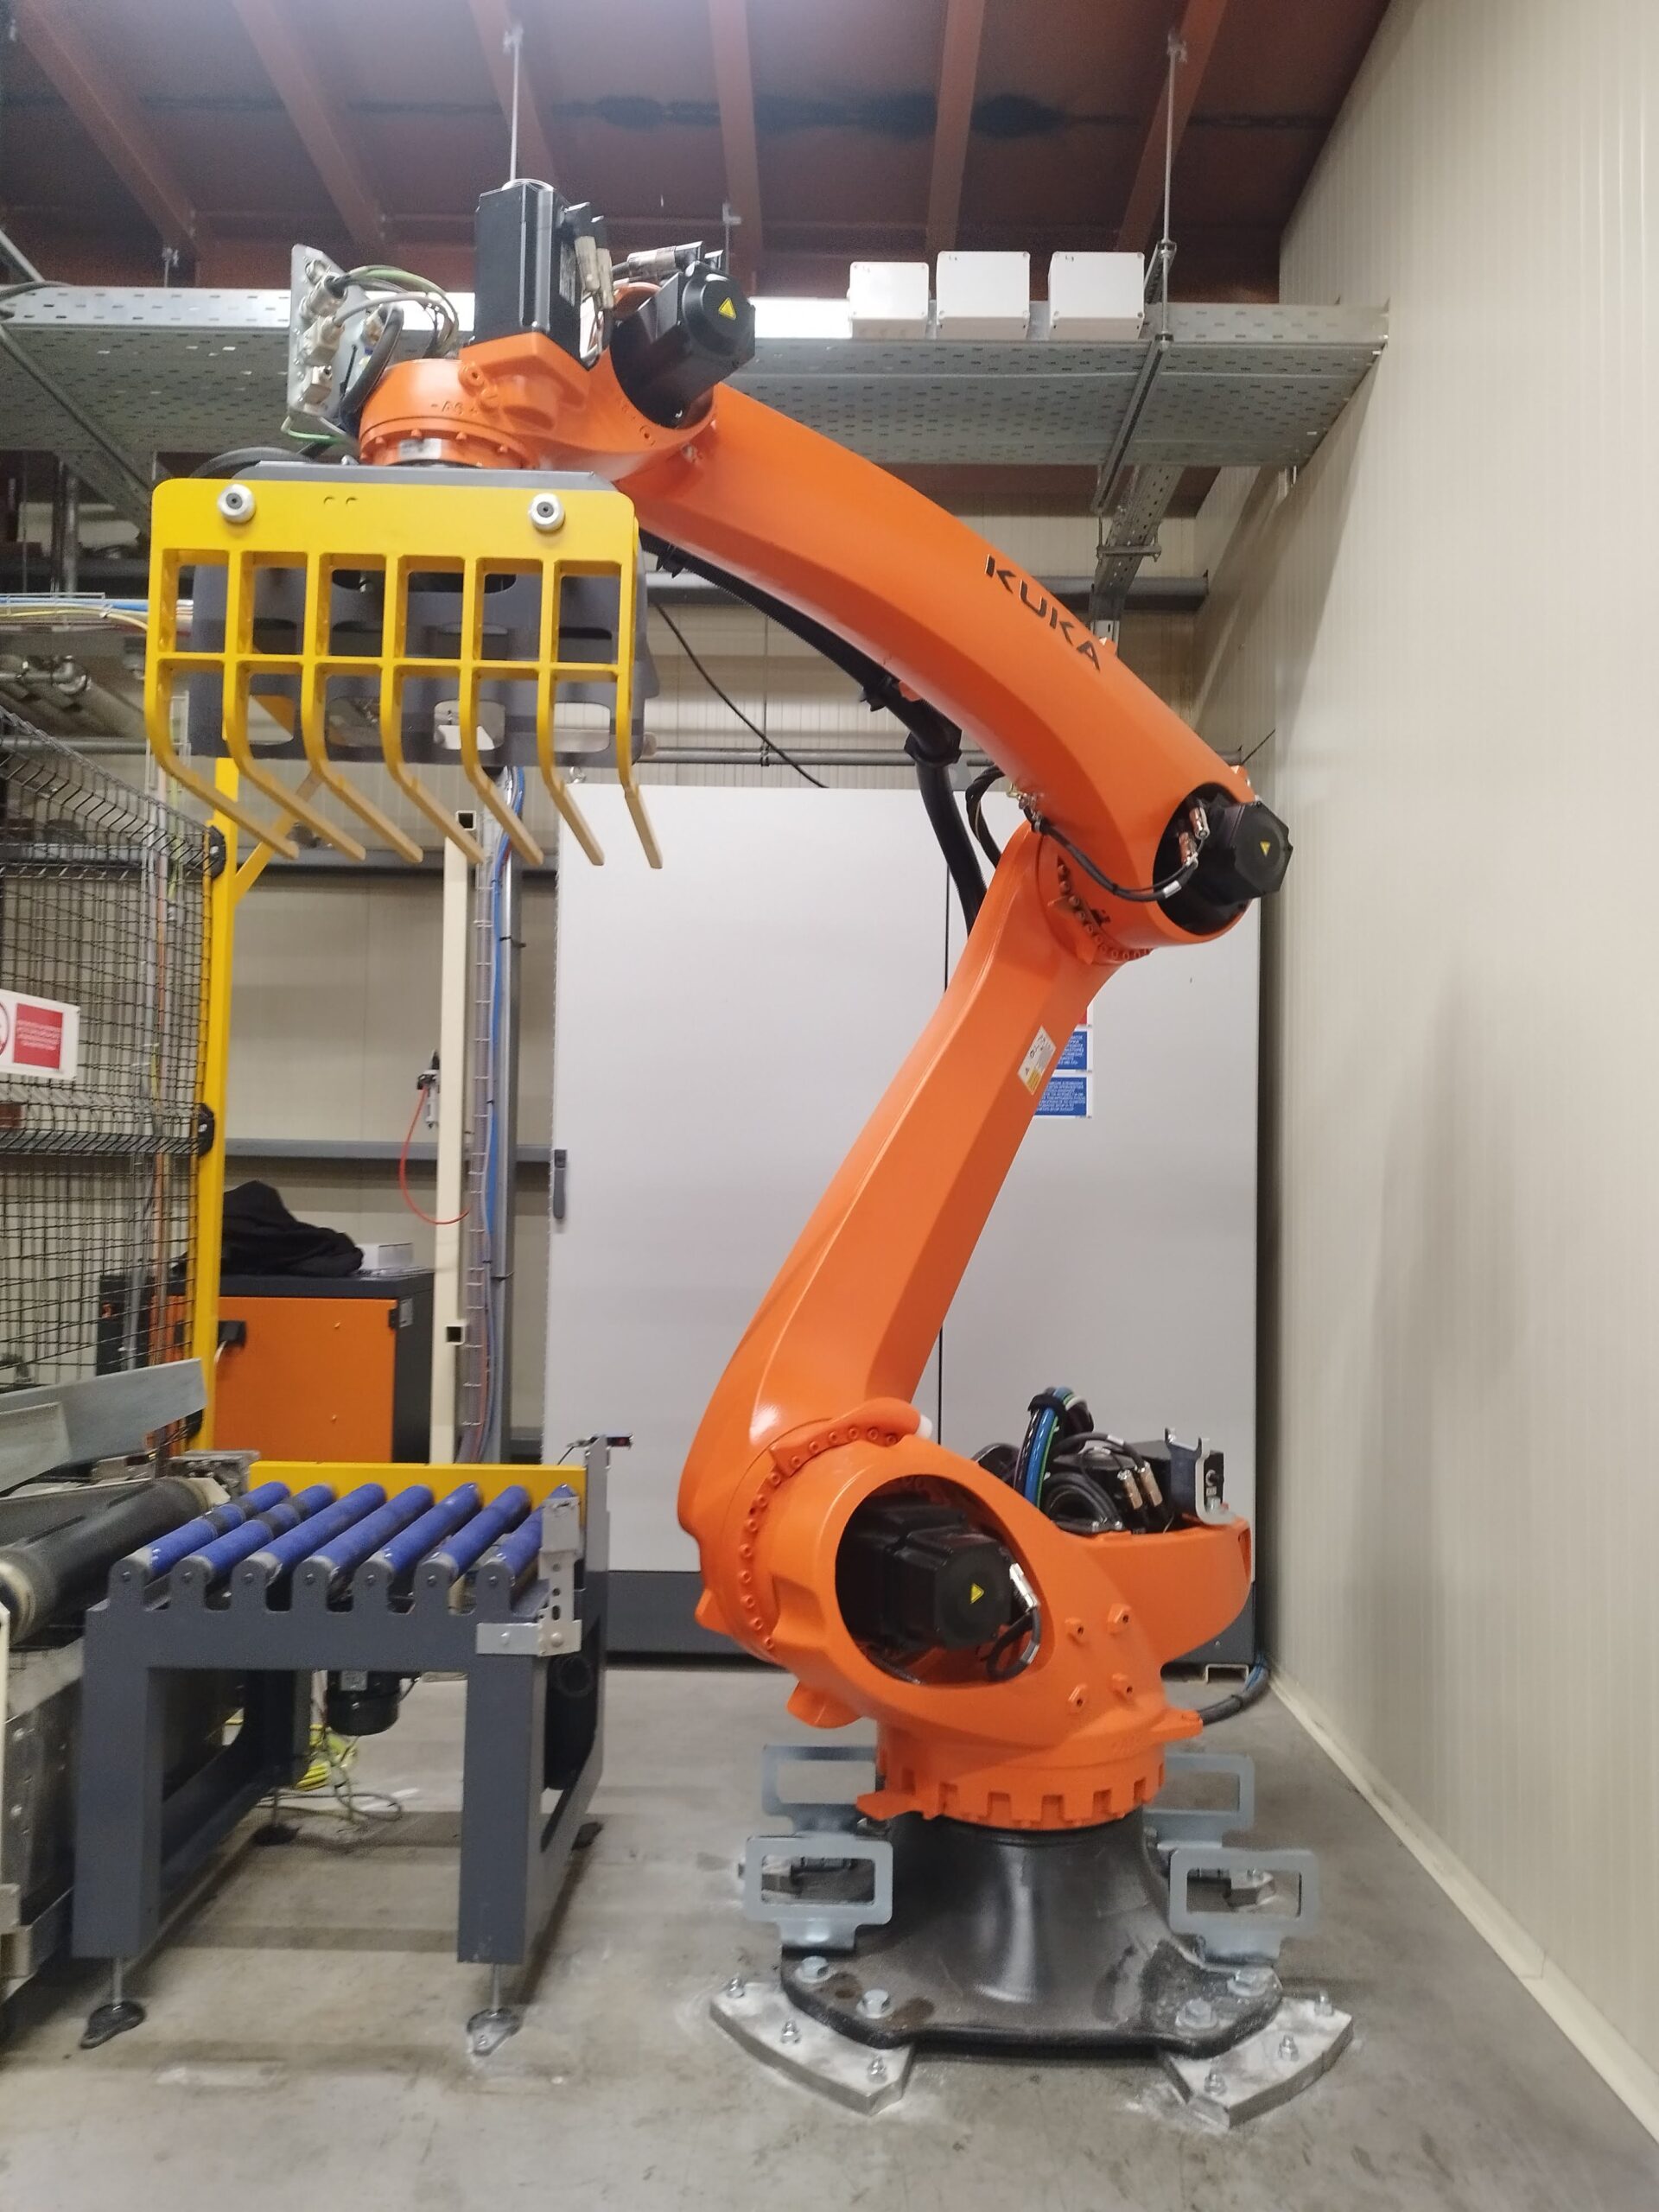 Παλετοποίηση με ρομποτικό σύστημα KUKA Robotics στη ΖΩΟΝΟΜΗ ΑΒΕΕ